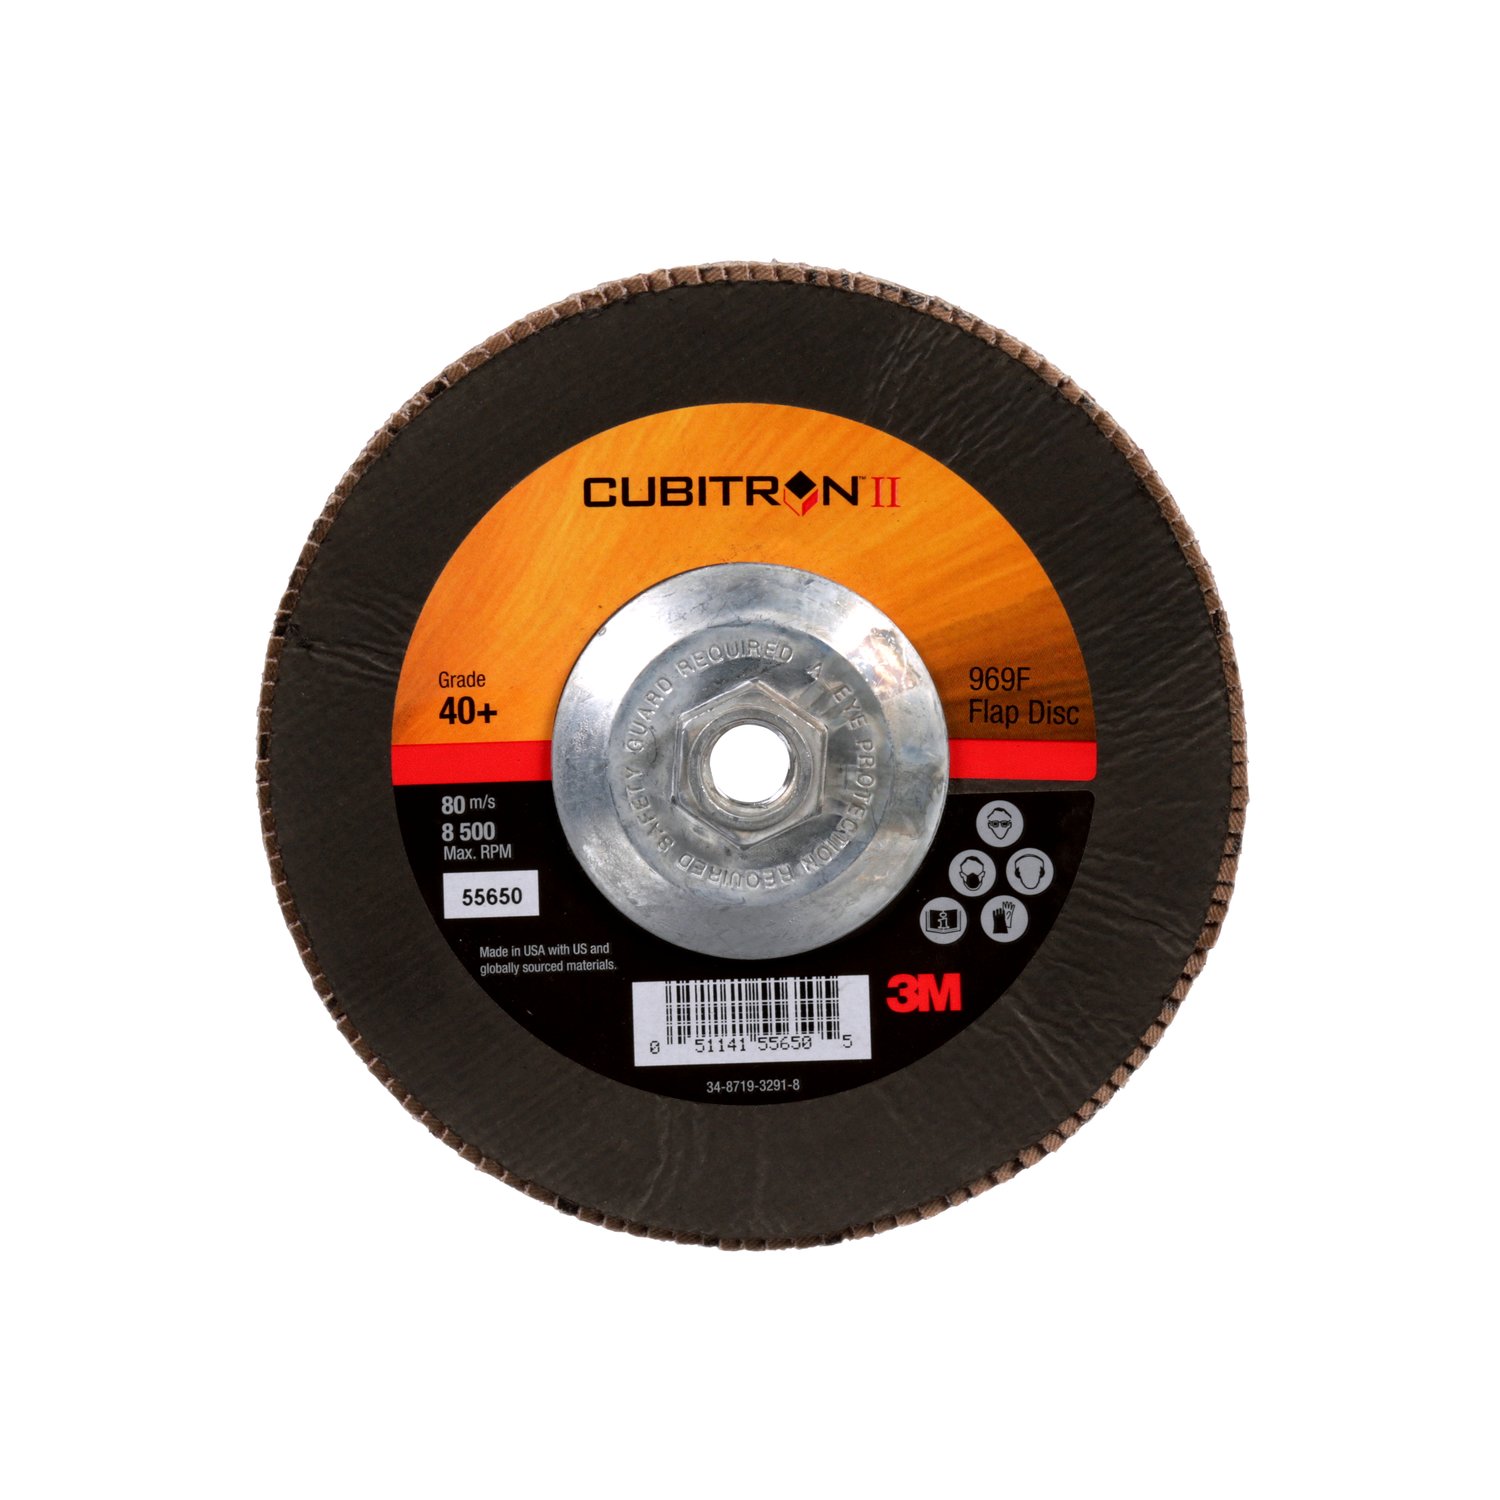 7010327066 - 3M Cubitron II Flap Disc 967A, 40+, T29 Quick Change, 7 in x 5/8"-11,
Giant, 5 ea/Case